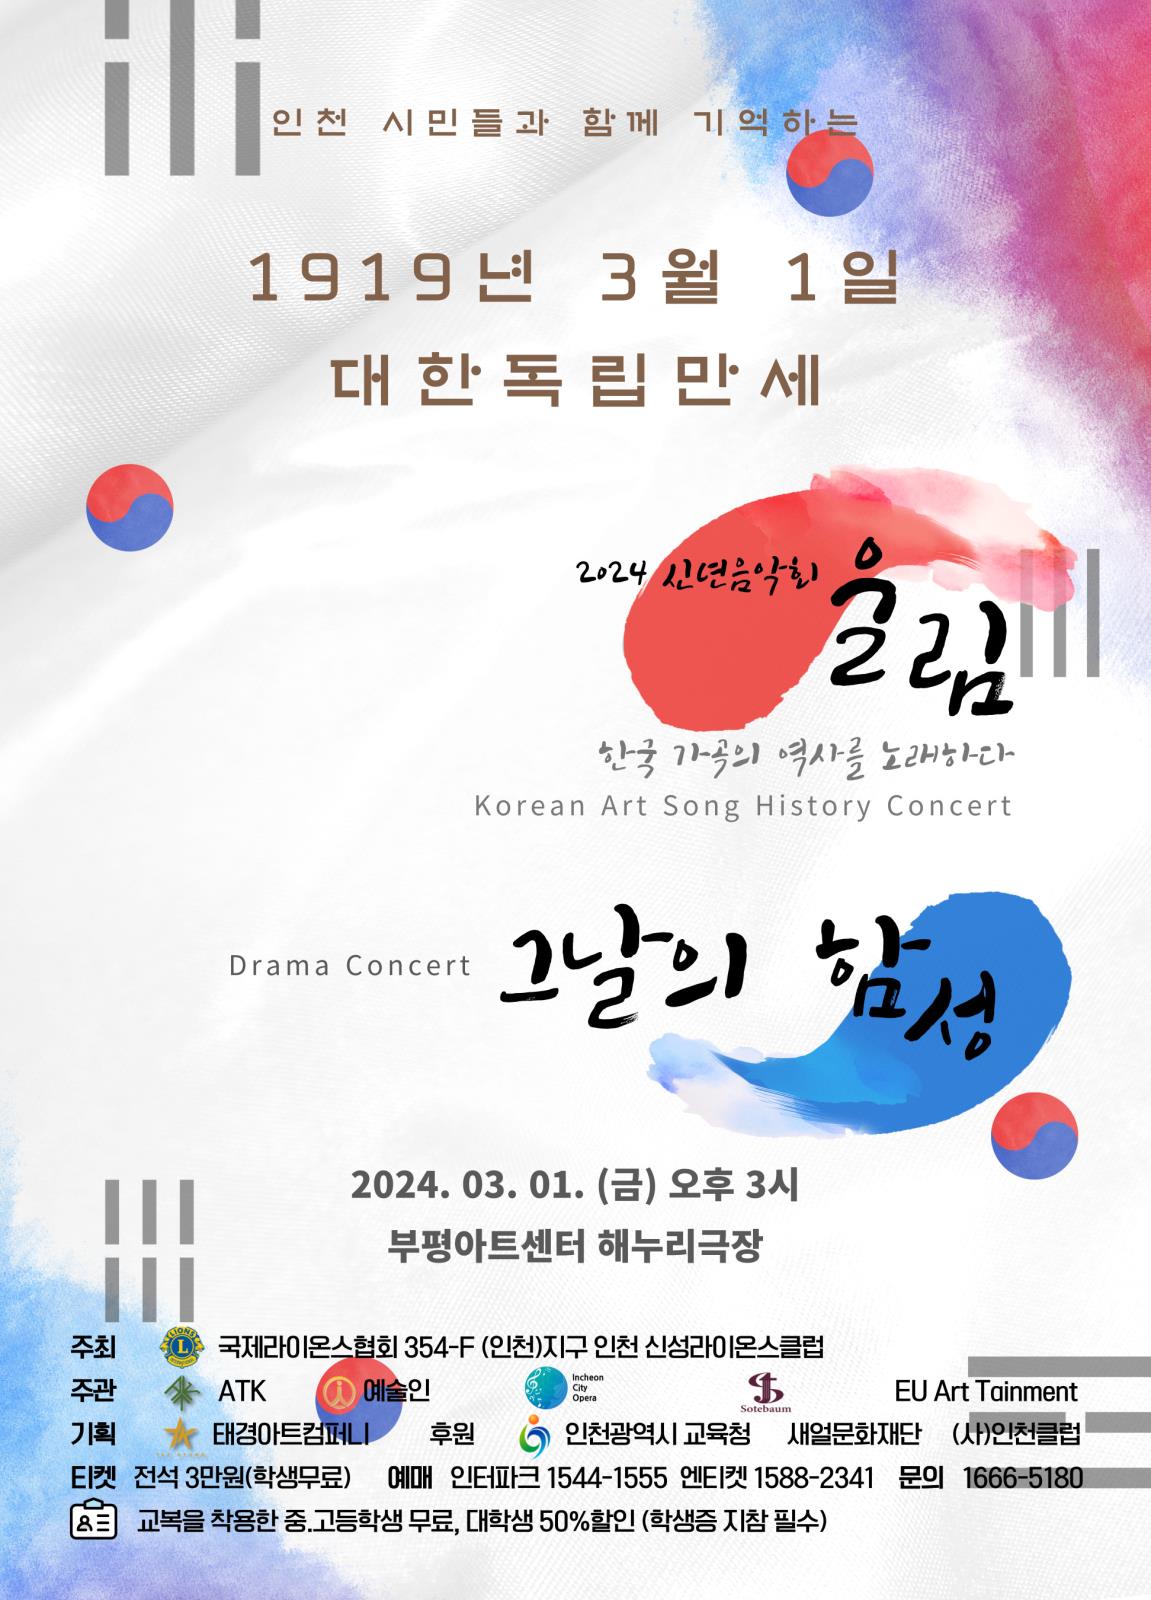 문화공연 한국가곡역사콘서트 "울림" 1919년 3월 1일 그날의 함성 대한독립만세!의 1번째 이미지